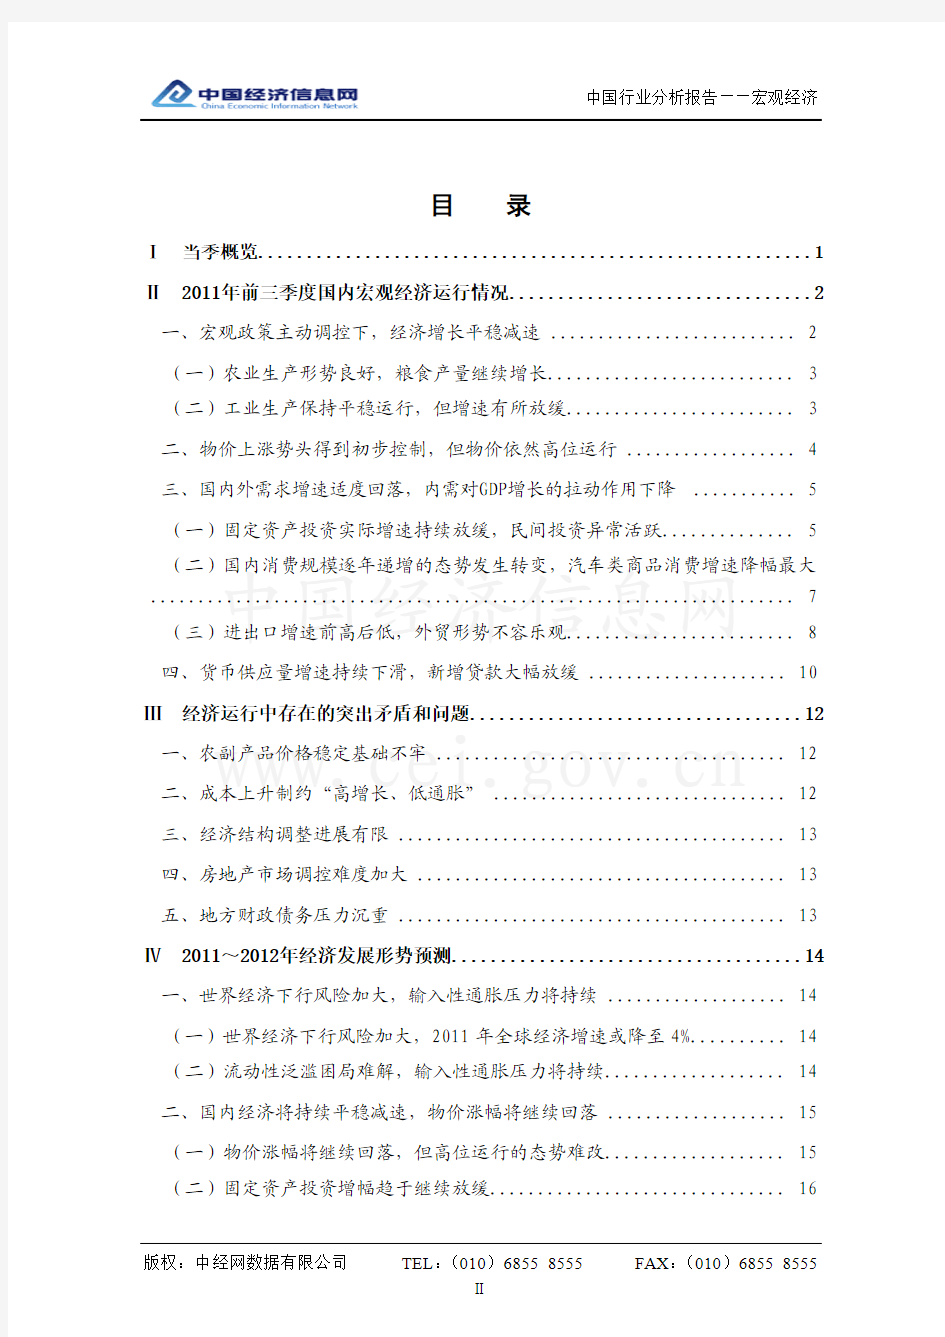 中国宏观经济分析报告(2011年3季度)